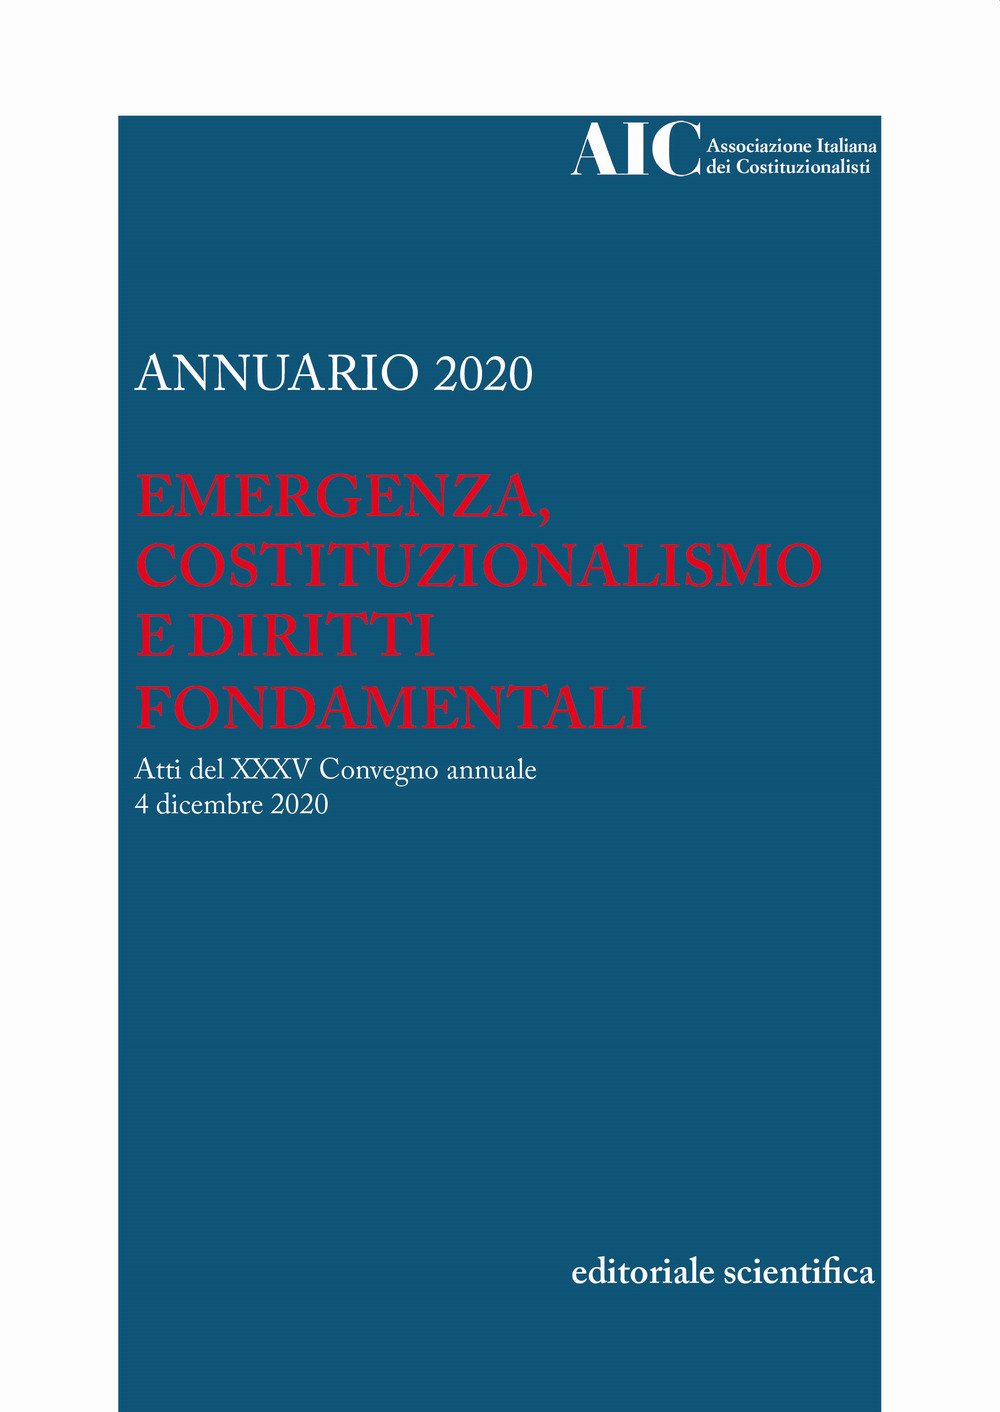 Annuario AIC 2020. Emergenza, costituzionalismo e diritti fondamentali. Atti del XXXV Convegno annuale (4 dicembre 2020)